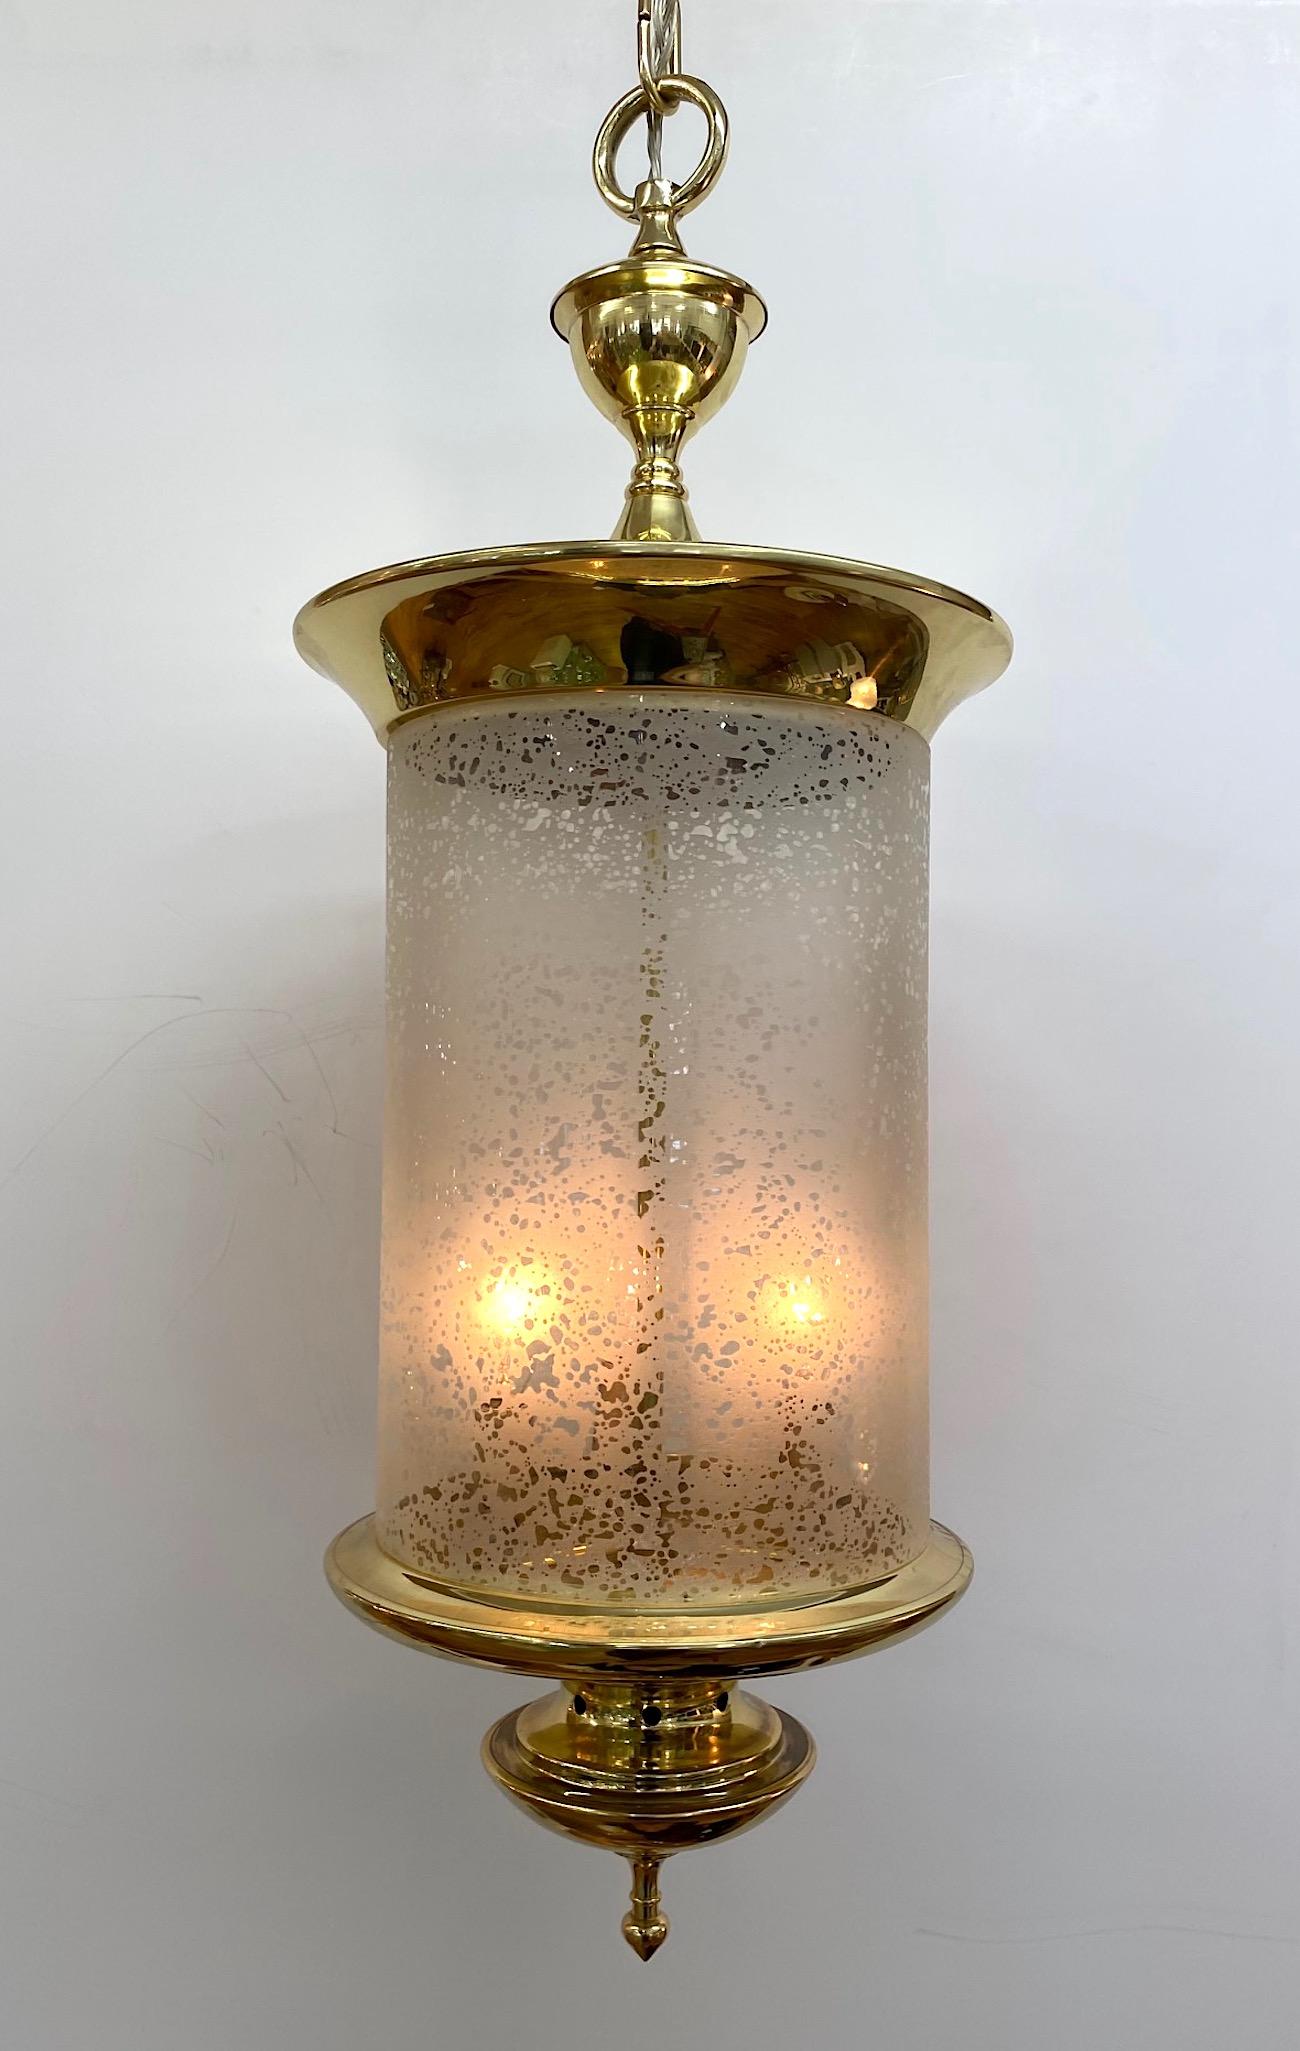 Une élégante lanterne italienne en laiton de conception classique, vers 1950. Le laiton est nouvellement poli et laqué. L'abat-jour en verre soufflé à la main est gravé à l'acide avec un motif chiné clair et givré pour adoucir la lumière. Chaîne